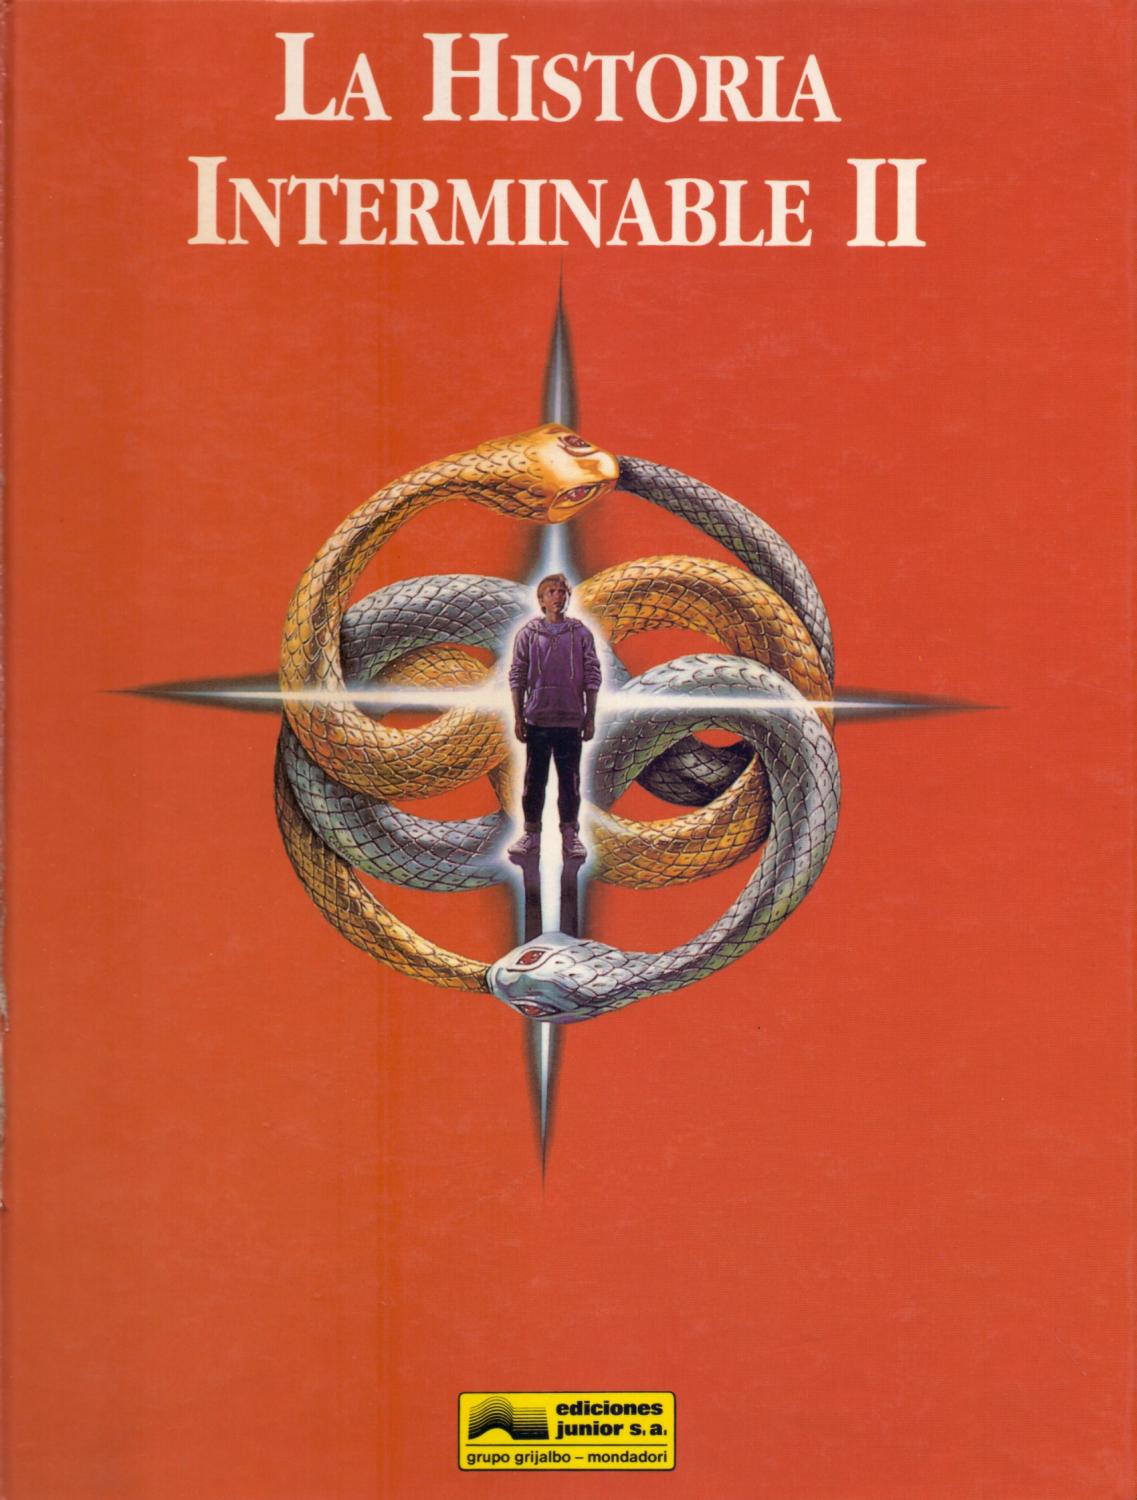 LA HISTORIA INTERMINABLE II - EL LIBRO DE LA PELICULA by Warner Bros